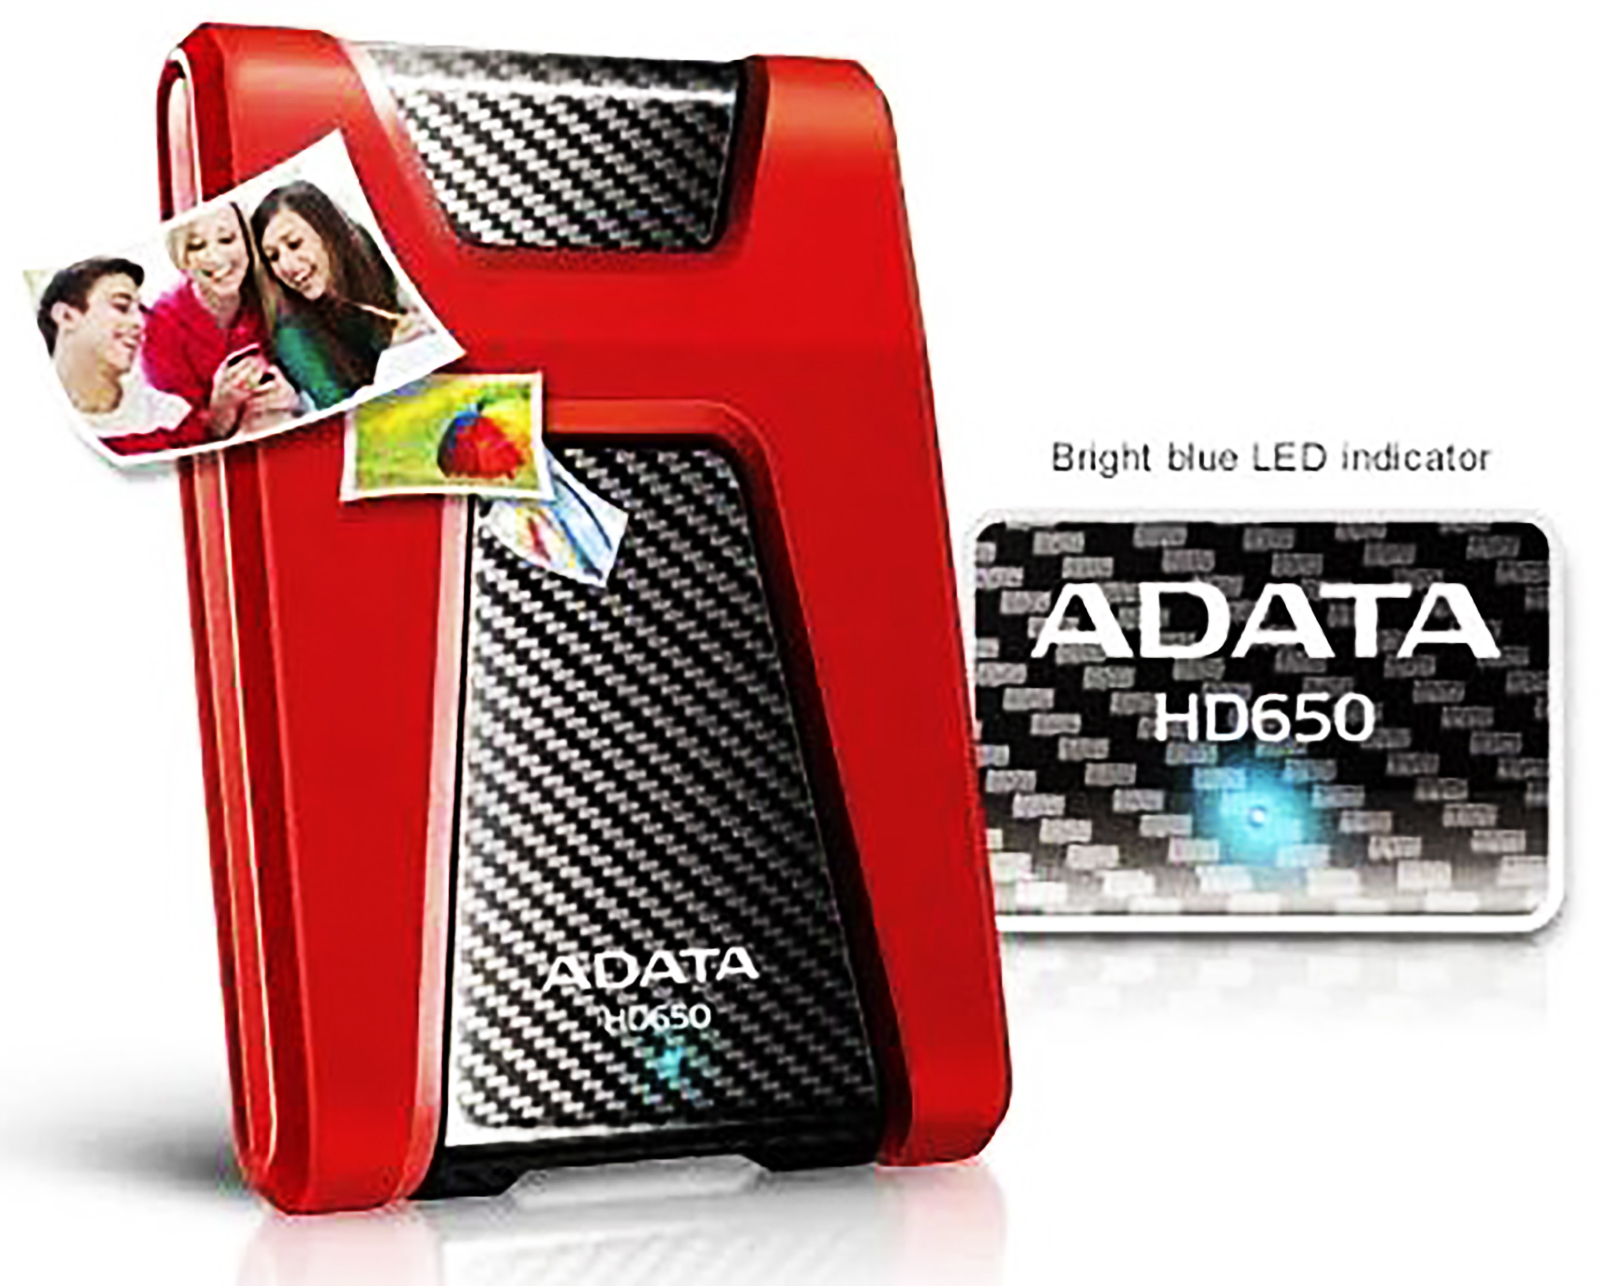 Adata 650. A-data hd650. Карманный жесткий диск АДАТА. A data hd650 4 ТБ. External Case (USB3.0) ADATA XPG ex500, Red.